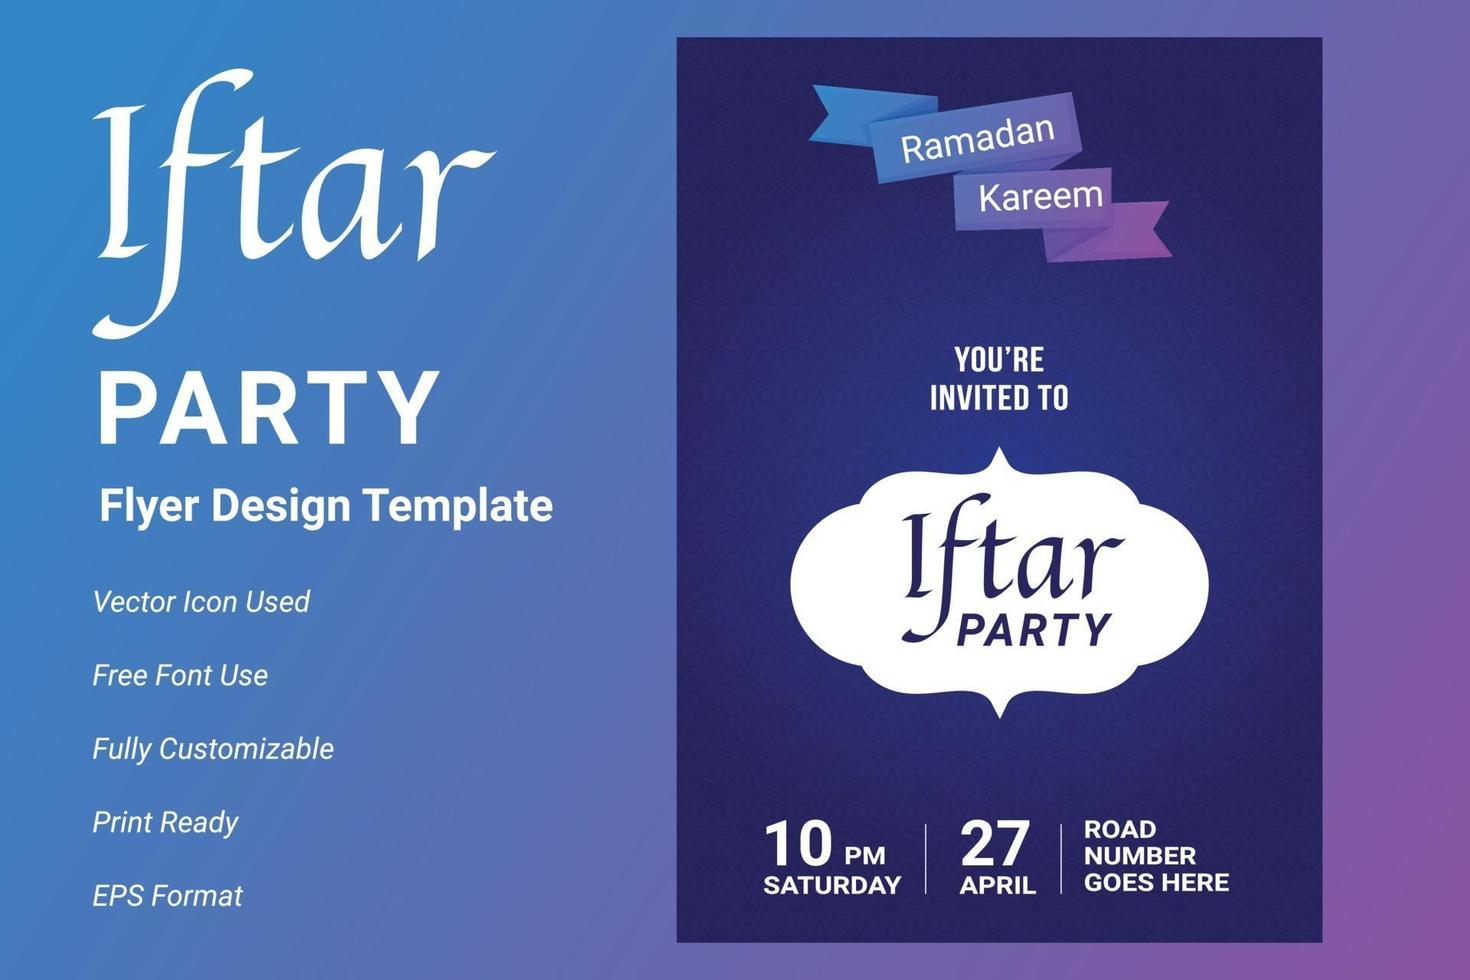 ifter party invitation flyer design. ramadan flygblad för ifter fest vektor